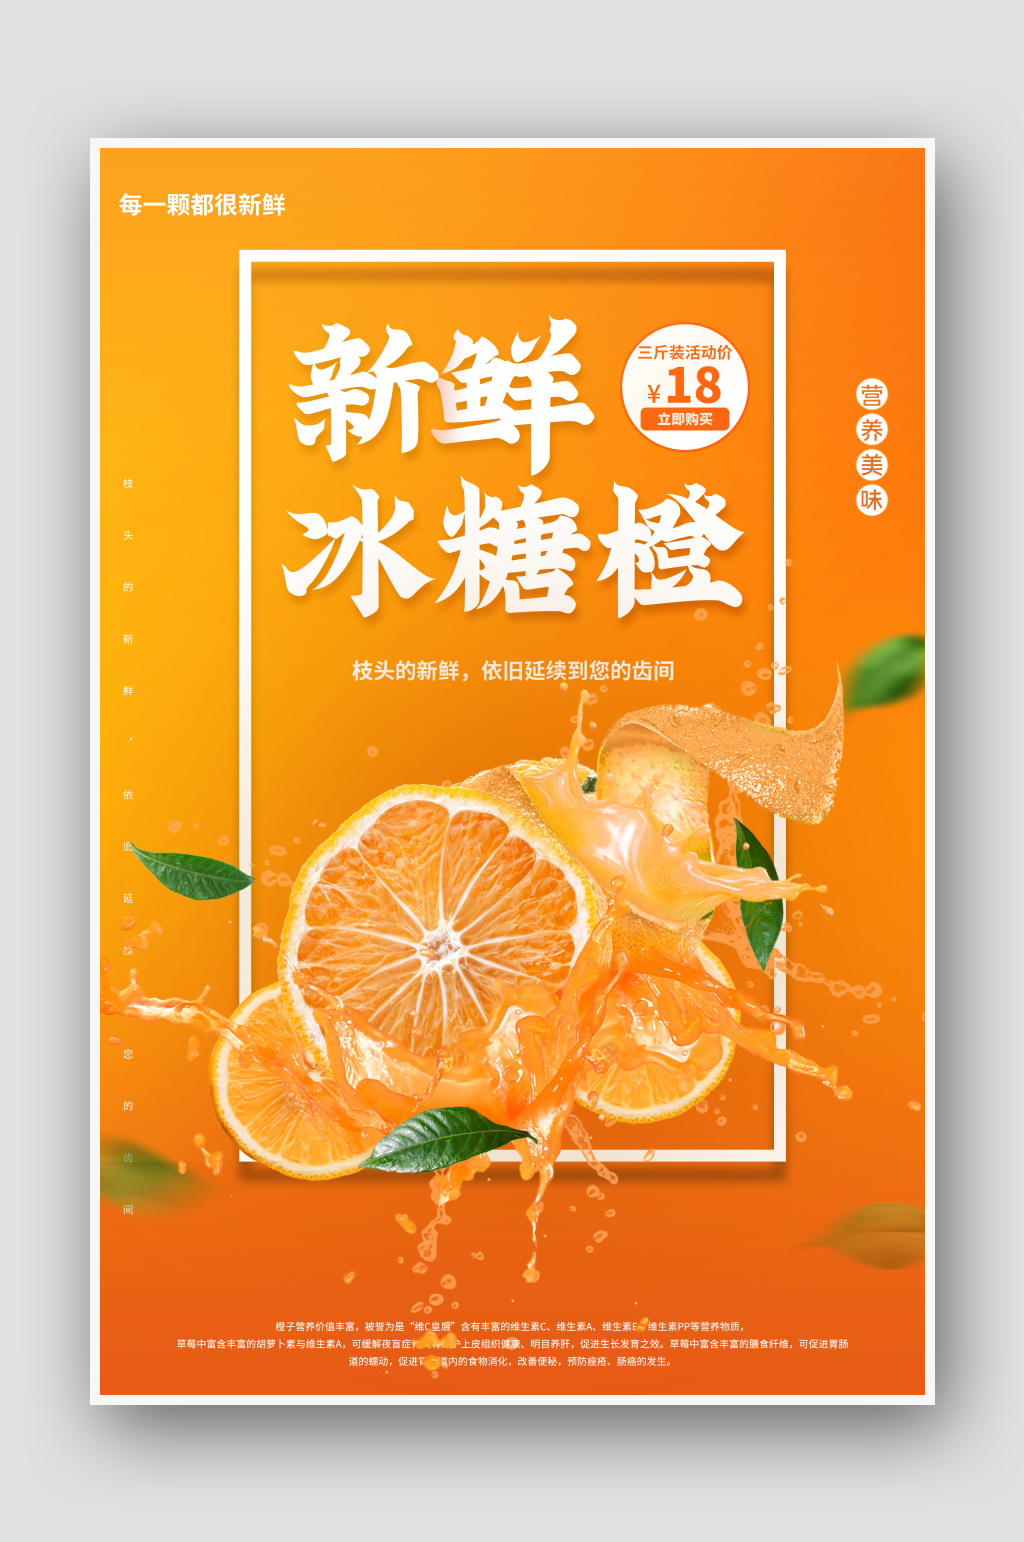 柑橘 海报素材免费下载,本作品是由泡面小王子上传的原创平面广告素材